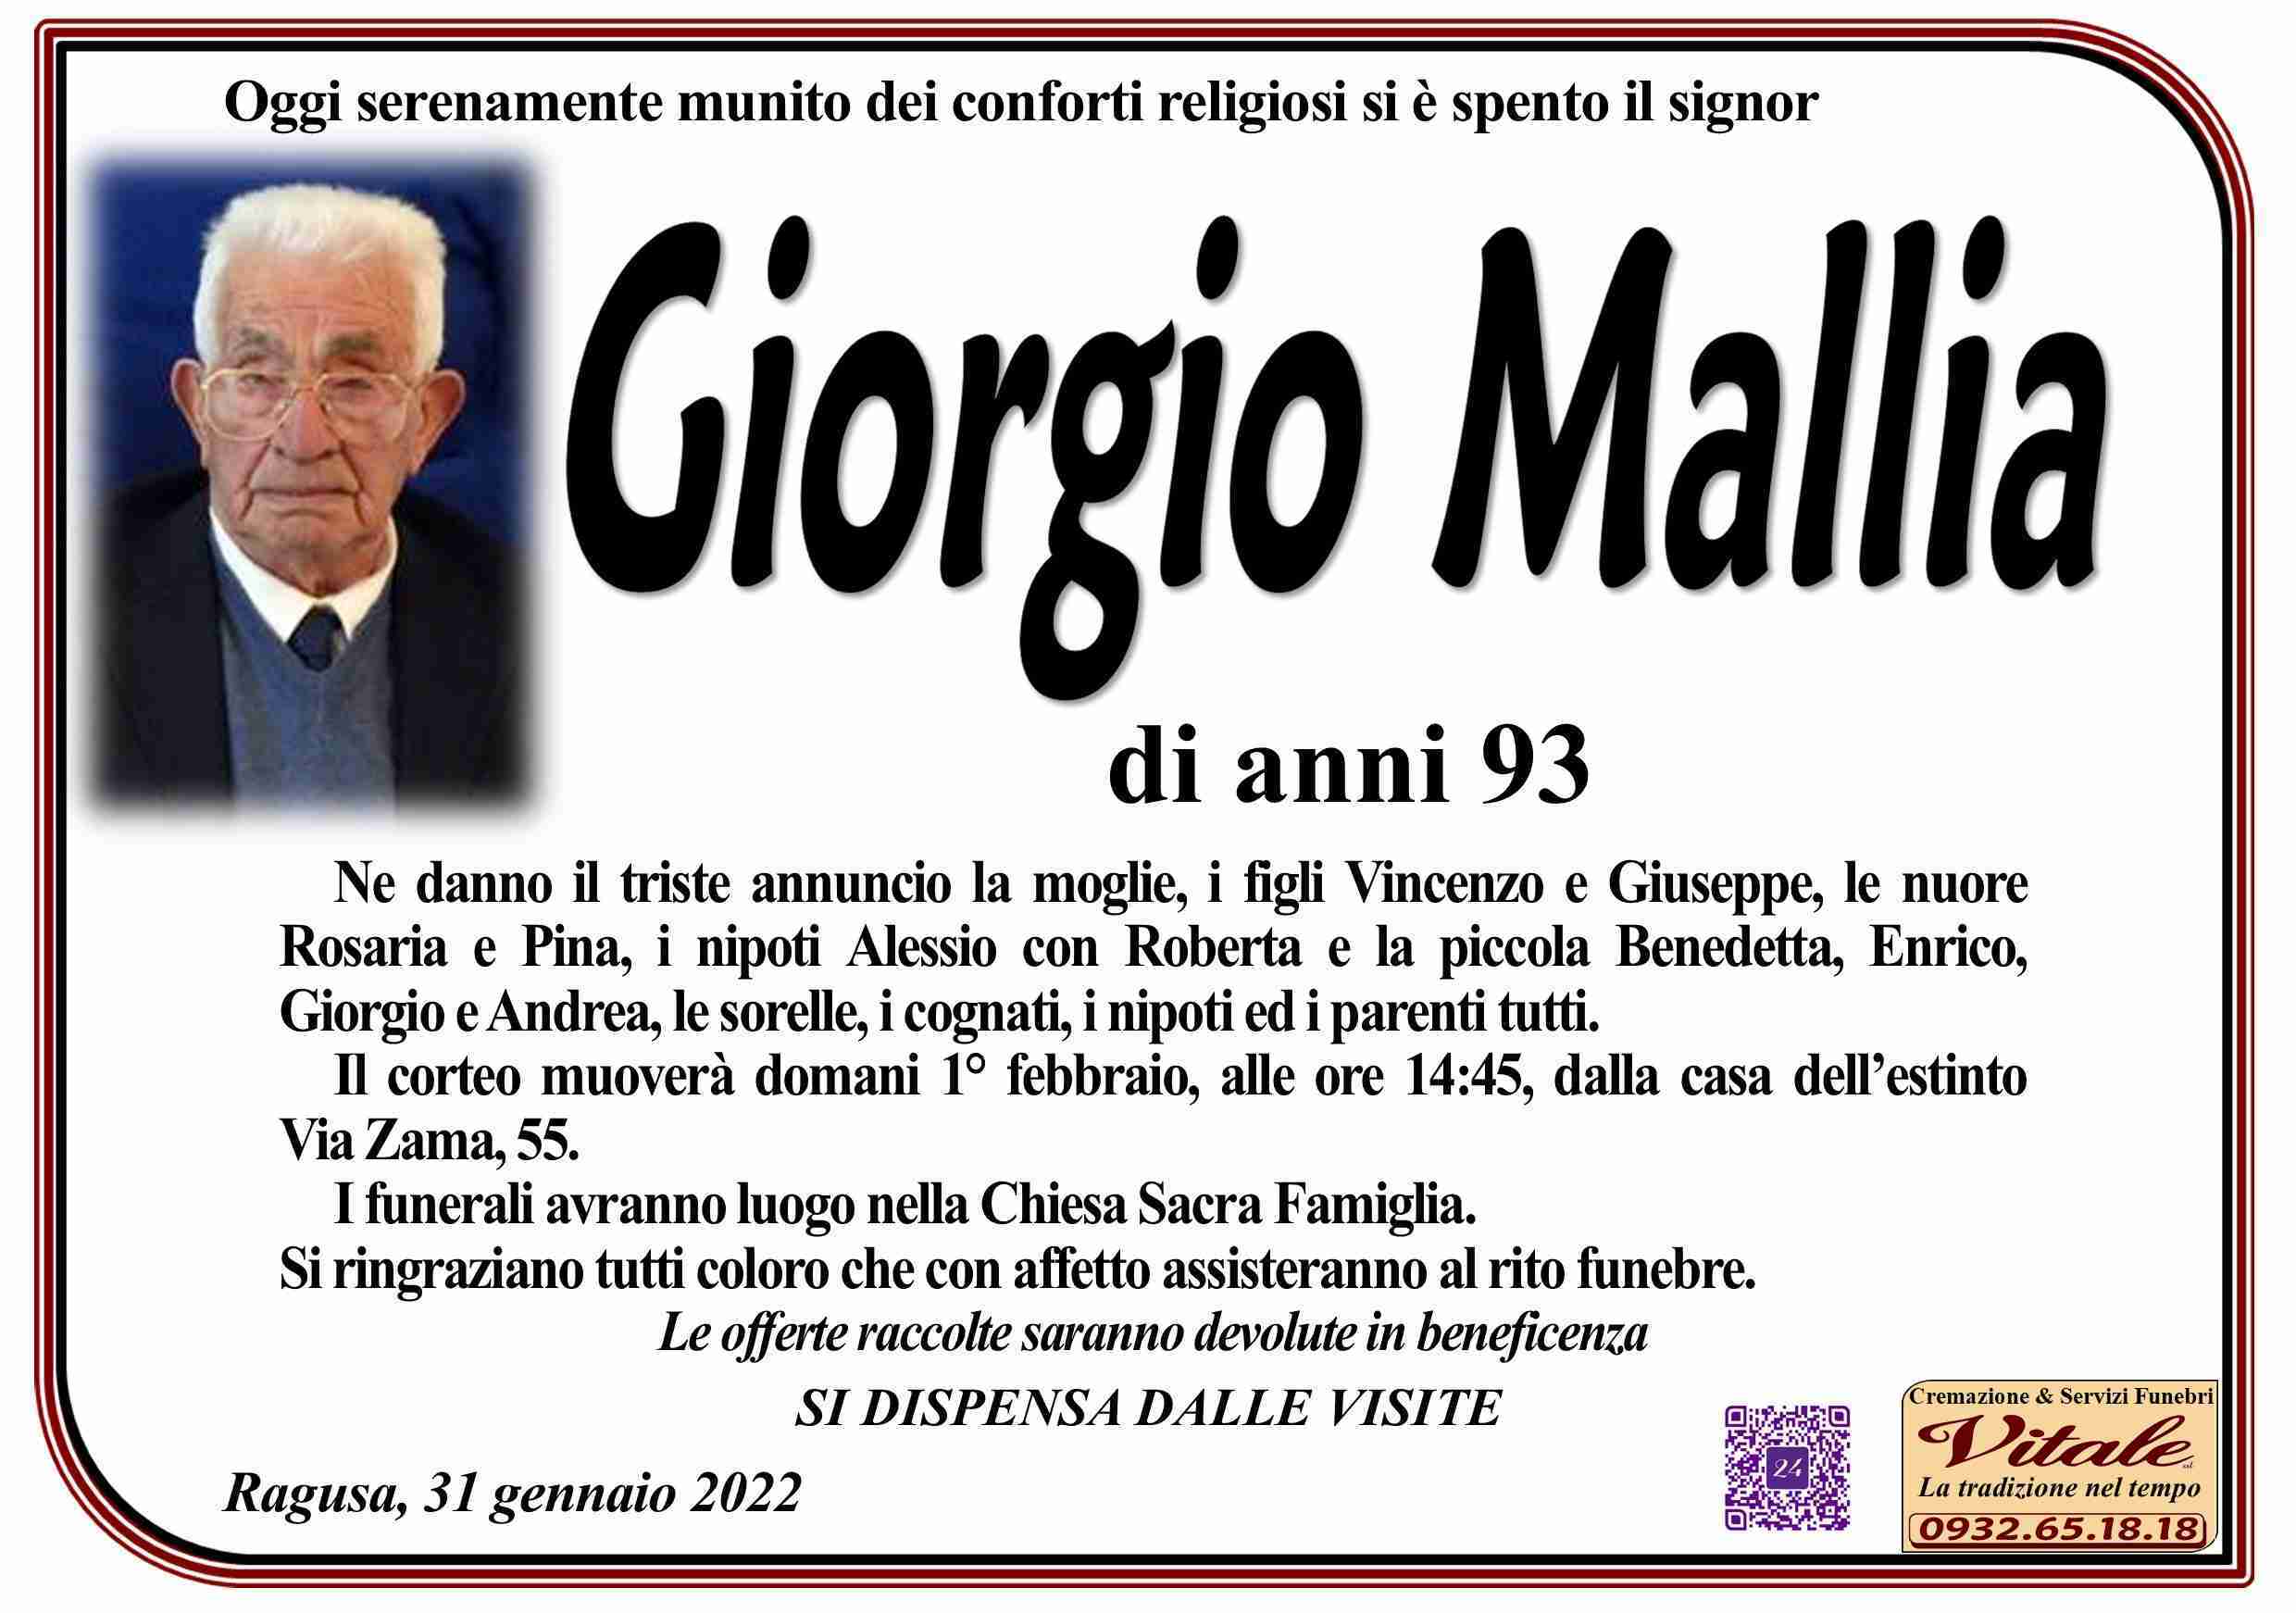 Giorgio Mallia